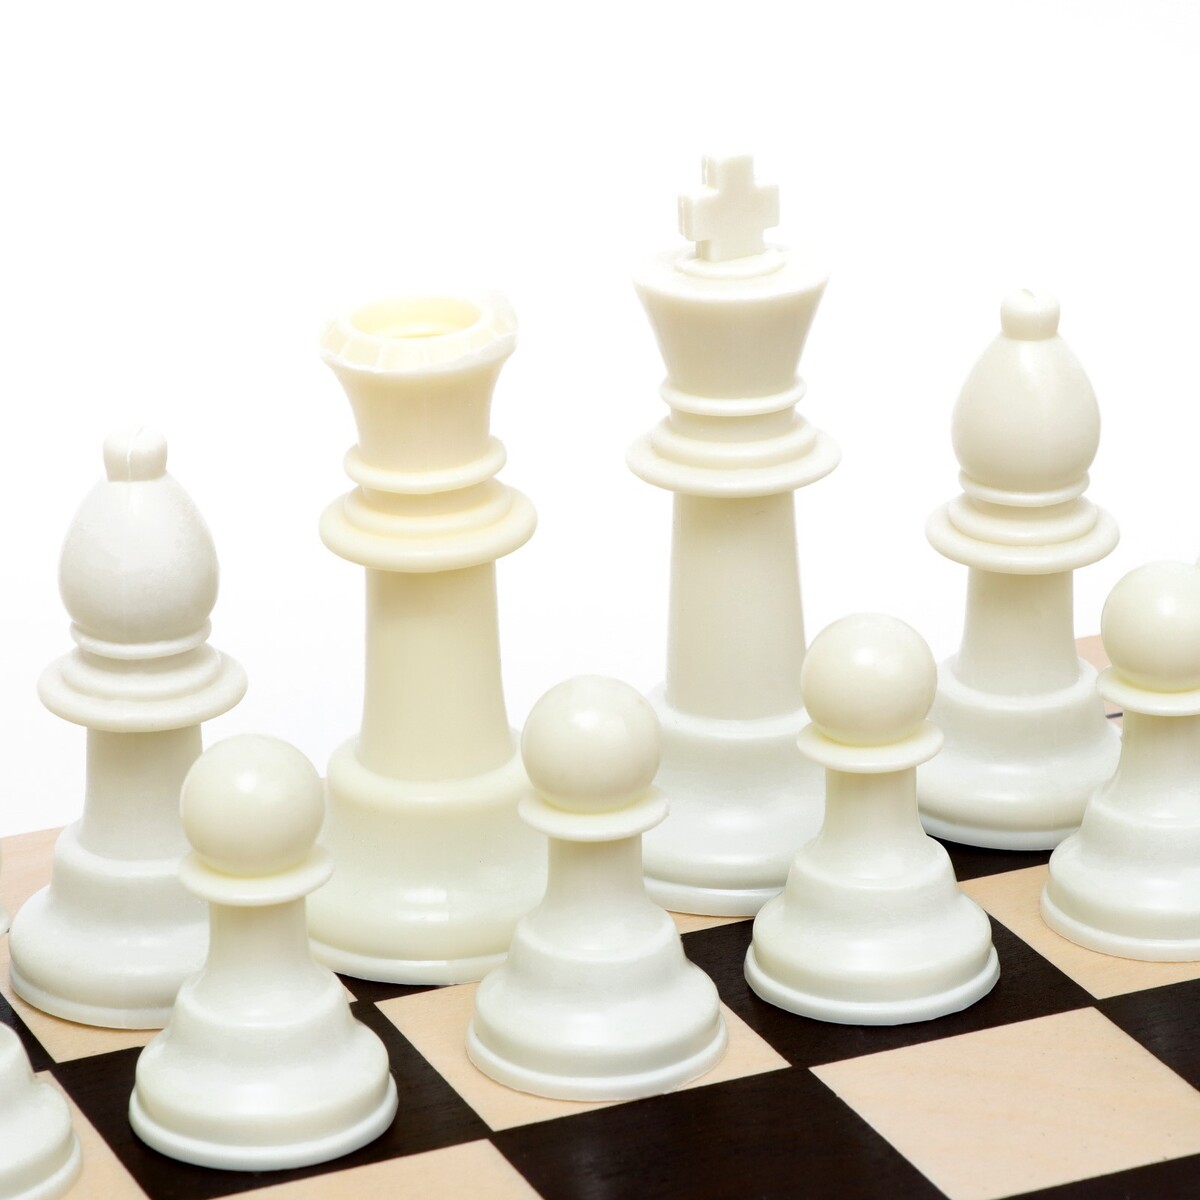 фото Шахматы гроссмейстерские, турнирные 43 х 43 см, король h-10.5 см, пешка h-5 см no brand